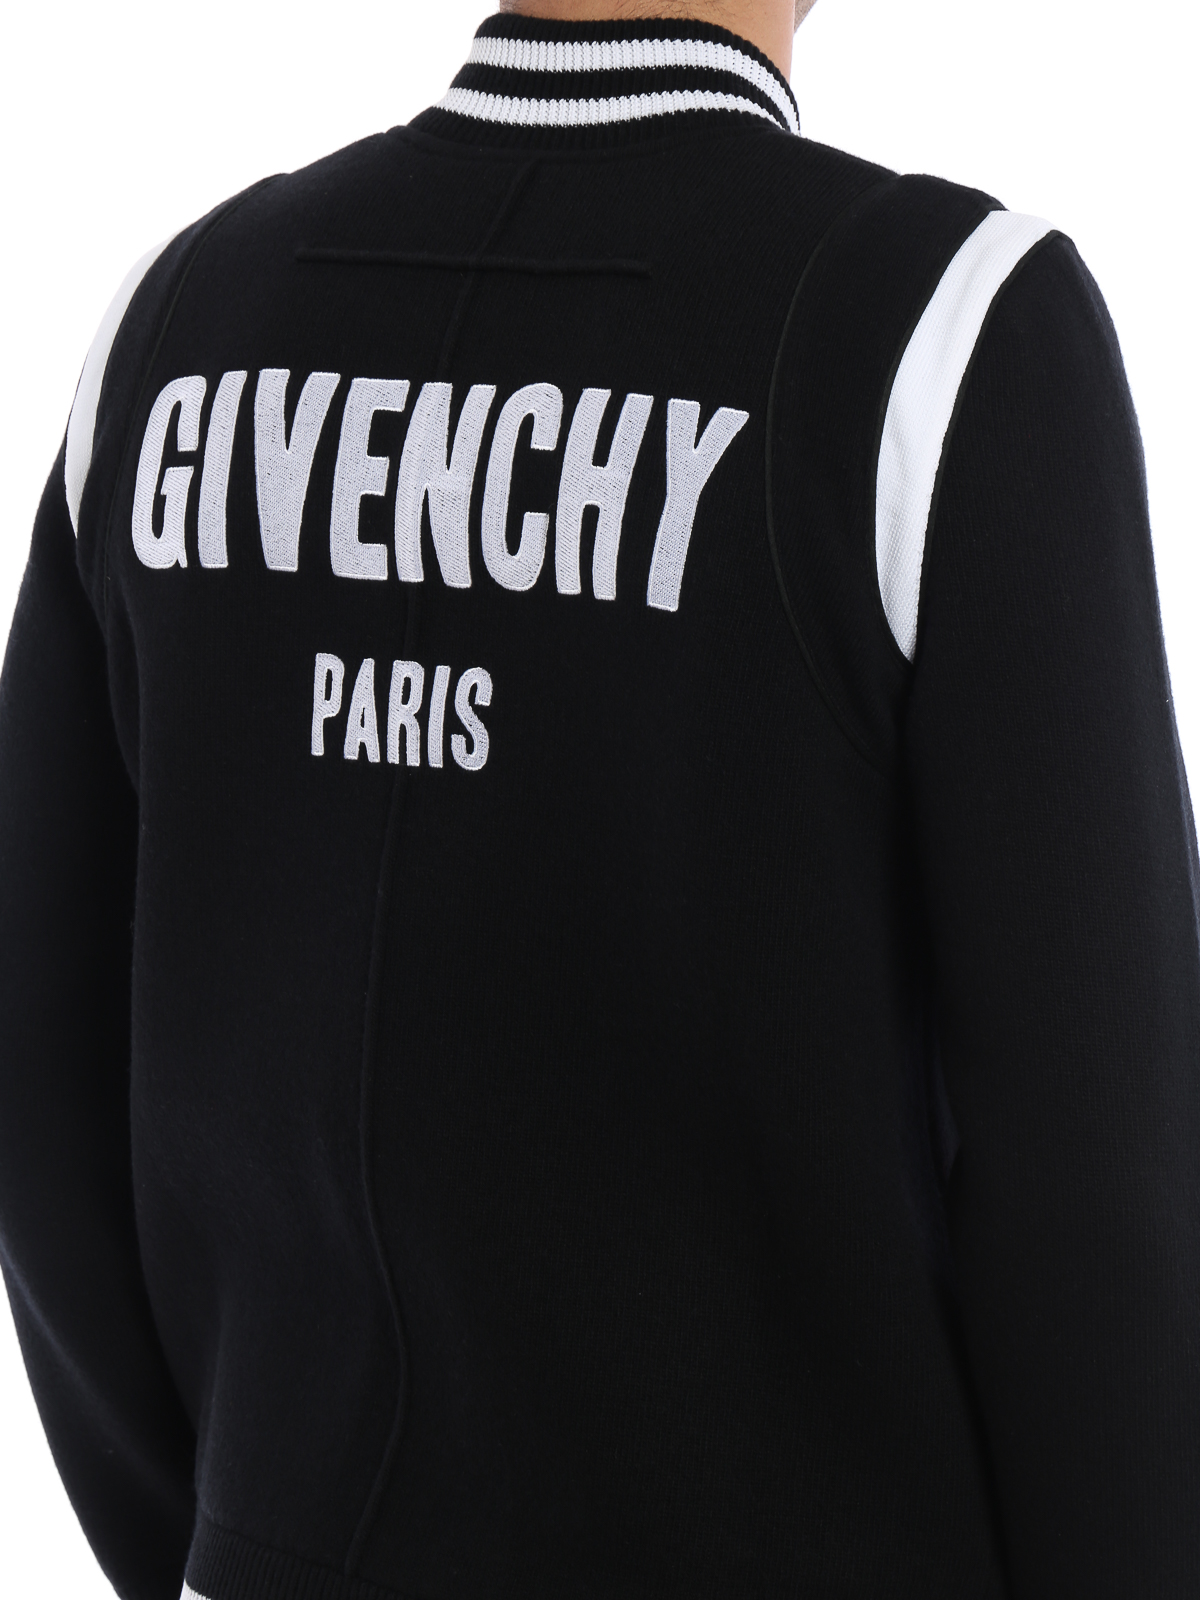 ボンバージャケット Givenchy - ボンバージャケット - 黒 - 17F7517511001